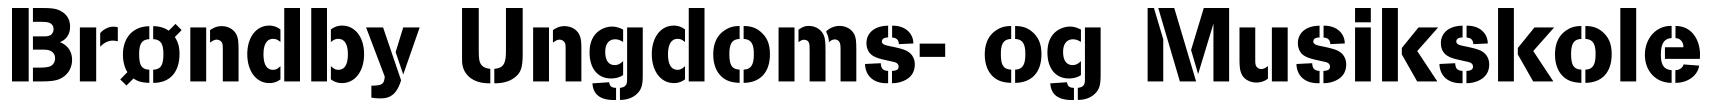 Logo - klik for at gå til forsiden